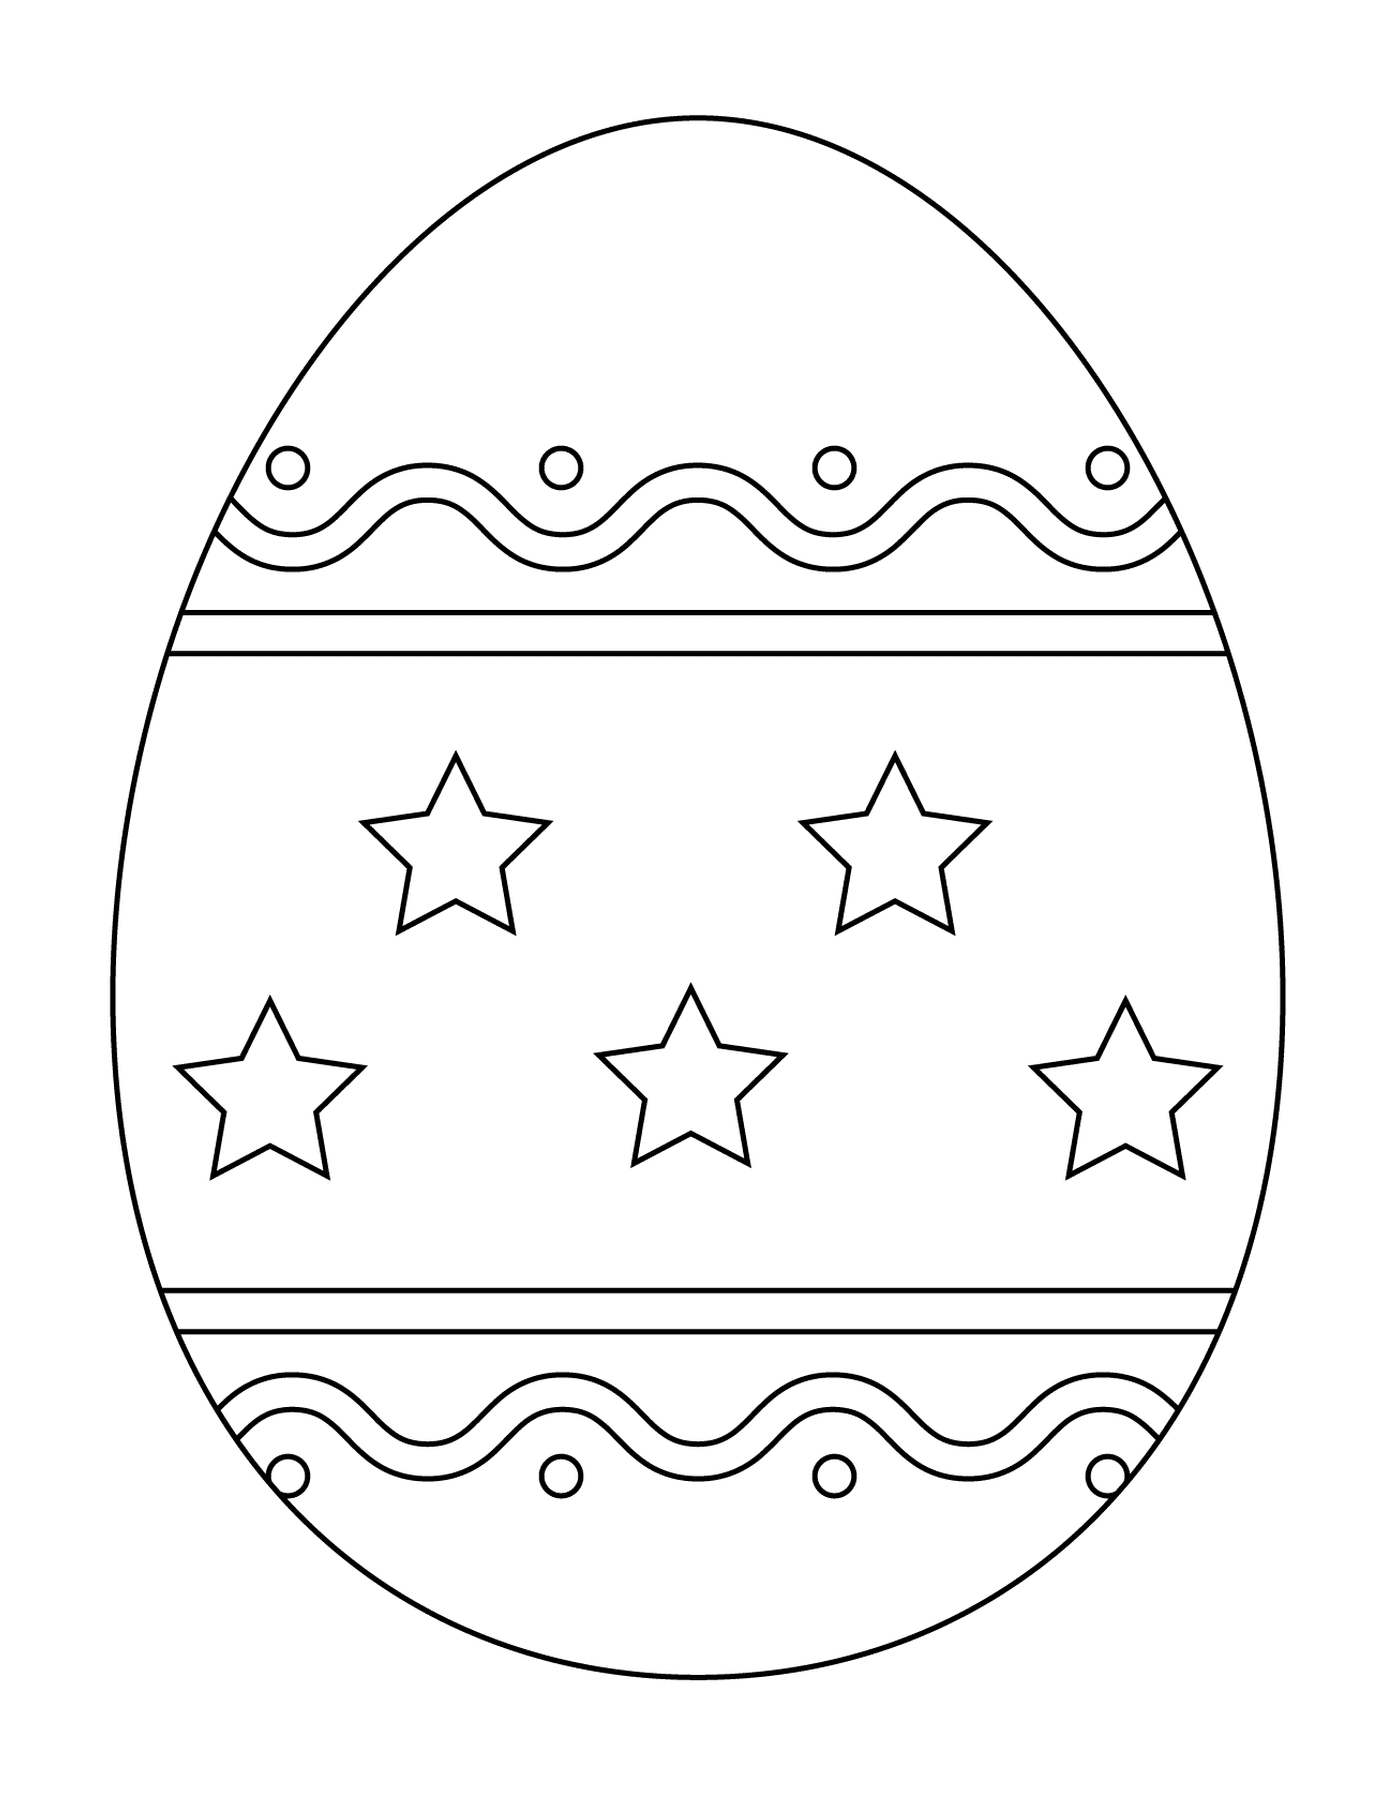  简单模式的复活蛋 